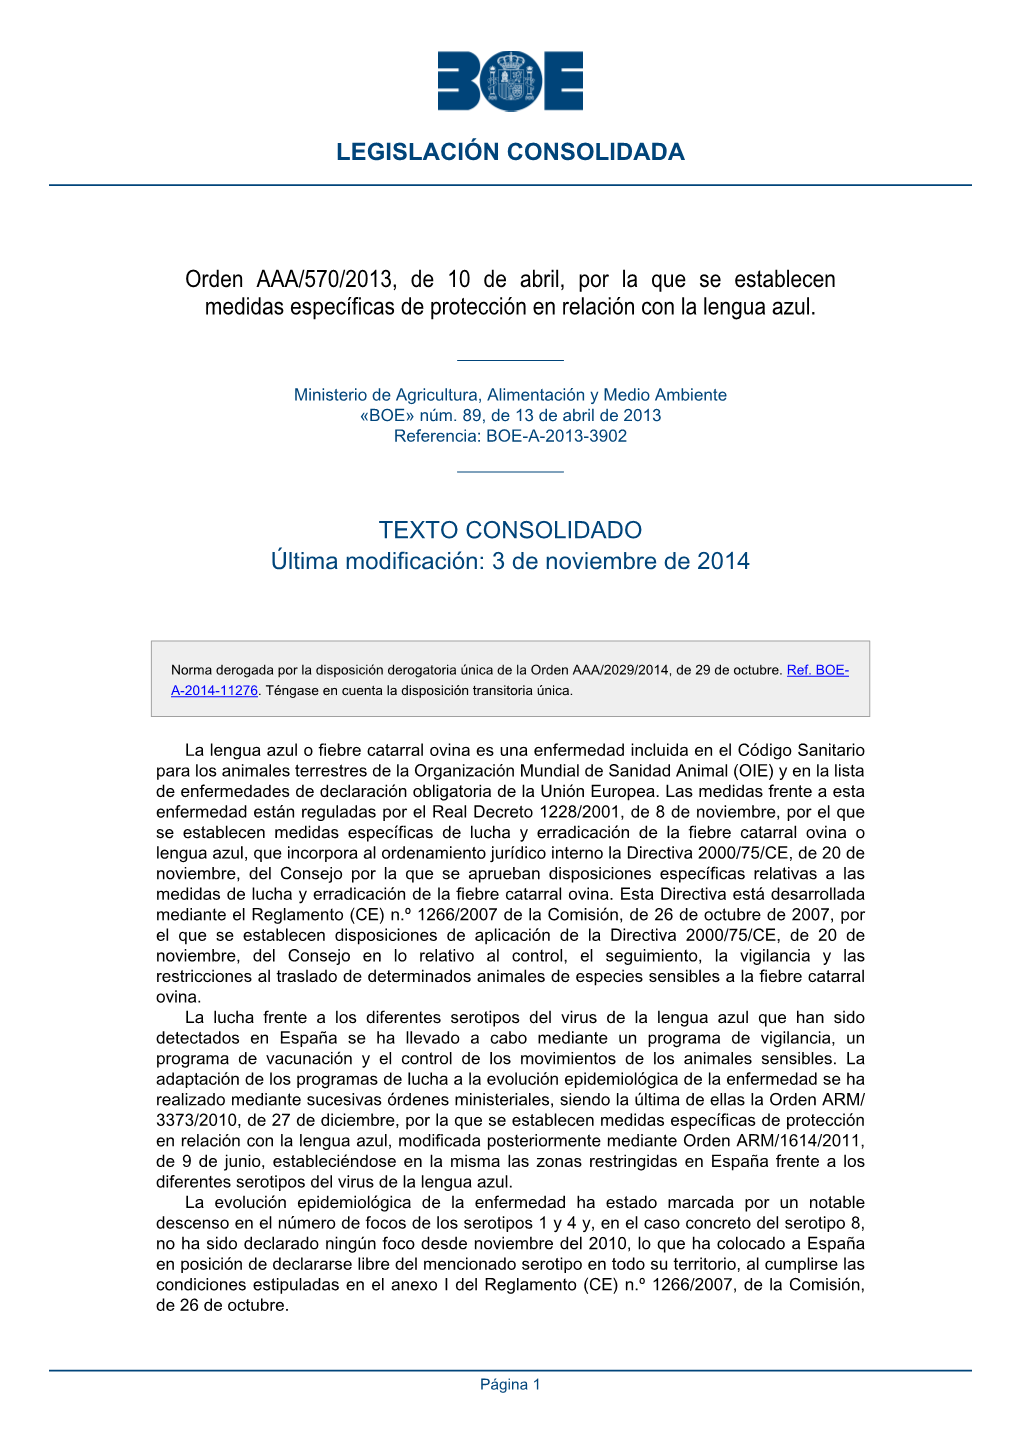 Orden AAA/570/2013, De 10 De Abril, Por La Que Se Establecen Medidas Específicas De Protección En Relación Con La Lengua Azul